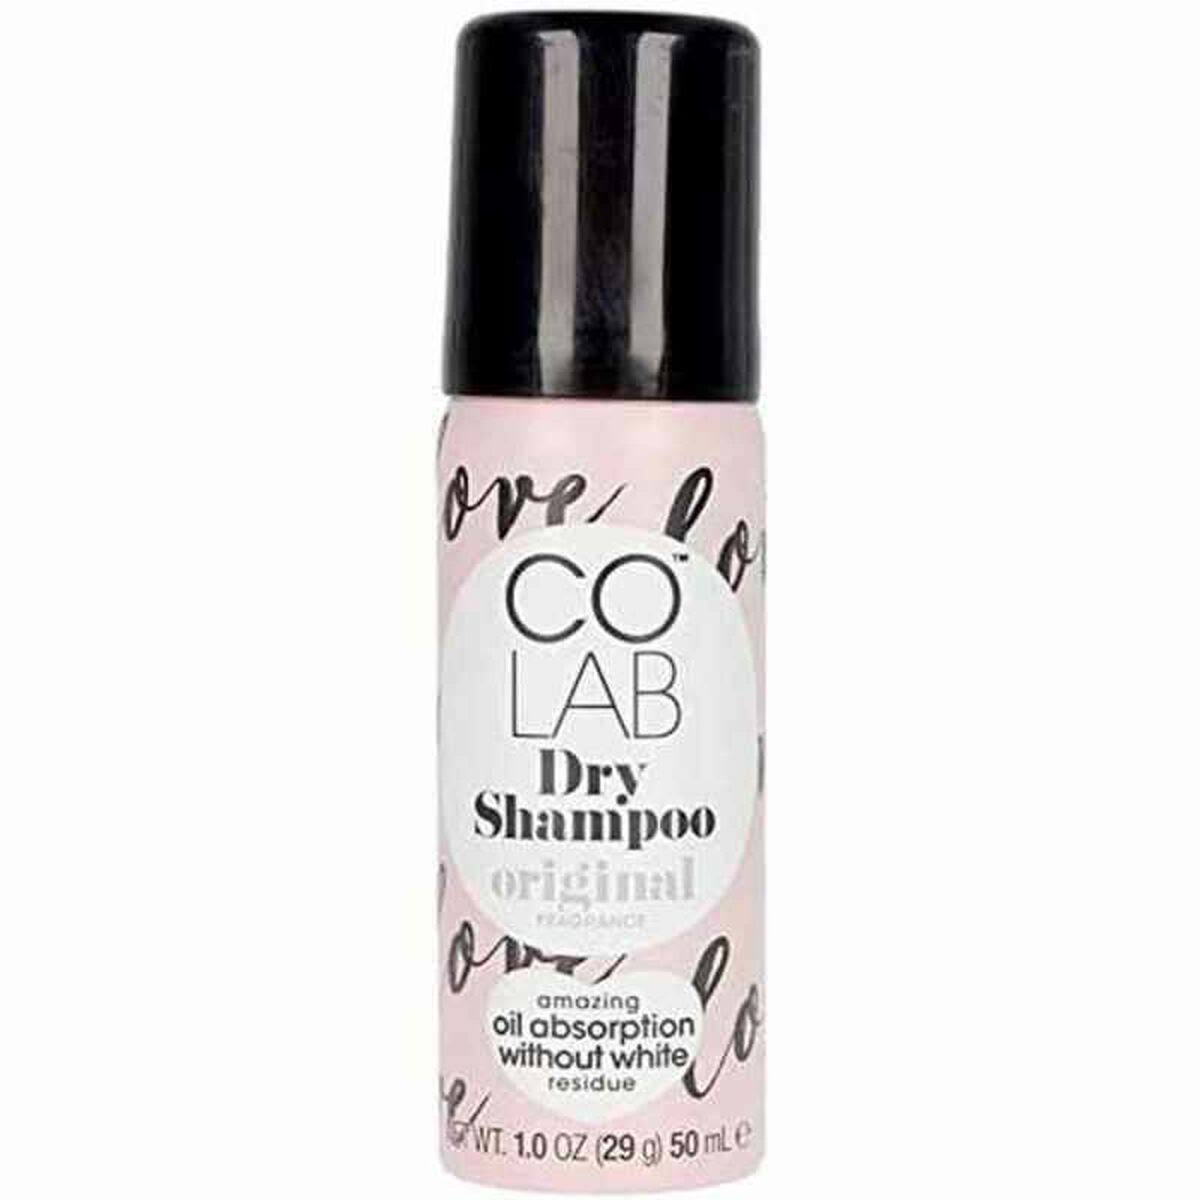 Colab Original Dry Shampoo 50 ml